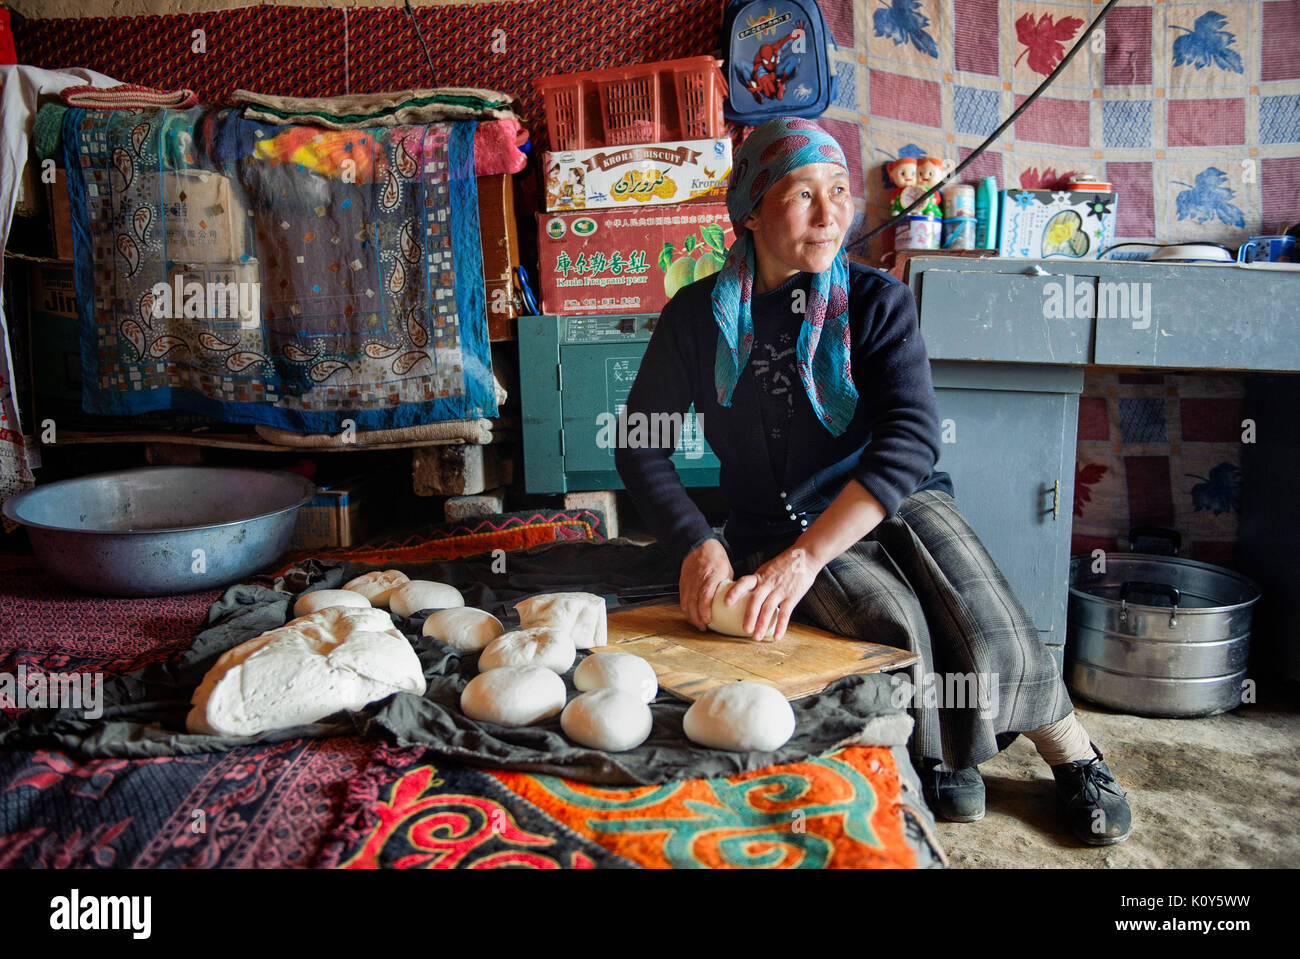 Traditionelle uigurische Frauen in fernen Xinjiang den ganzen Tag im Haus, die die tägliche Arbeit bleiben. Kochen, Brot backen, die Zubereitung von Tee, betreuen die Kinder, während die Männer außerhalb der Arbeit. Stockfoto